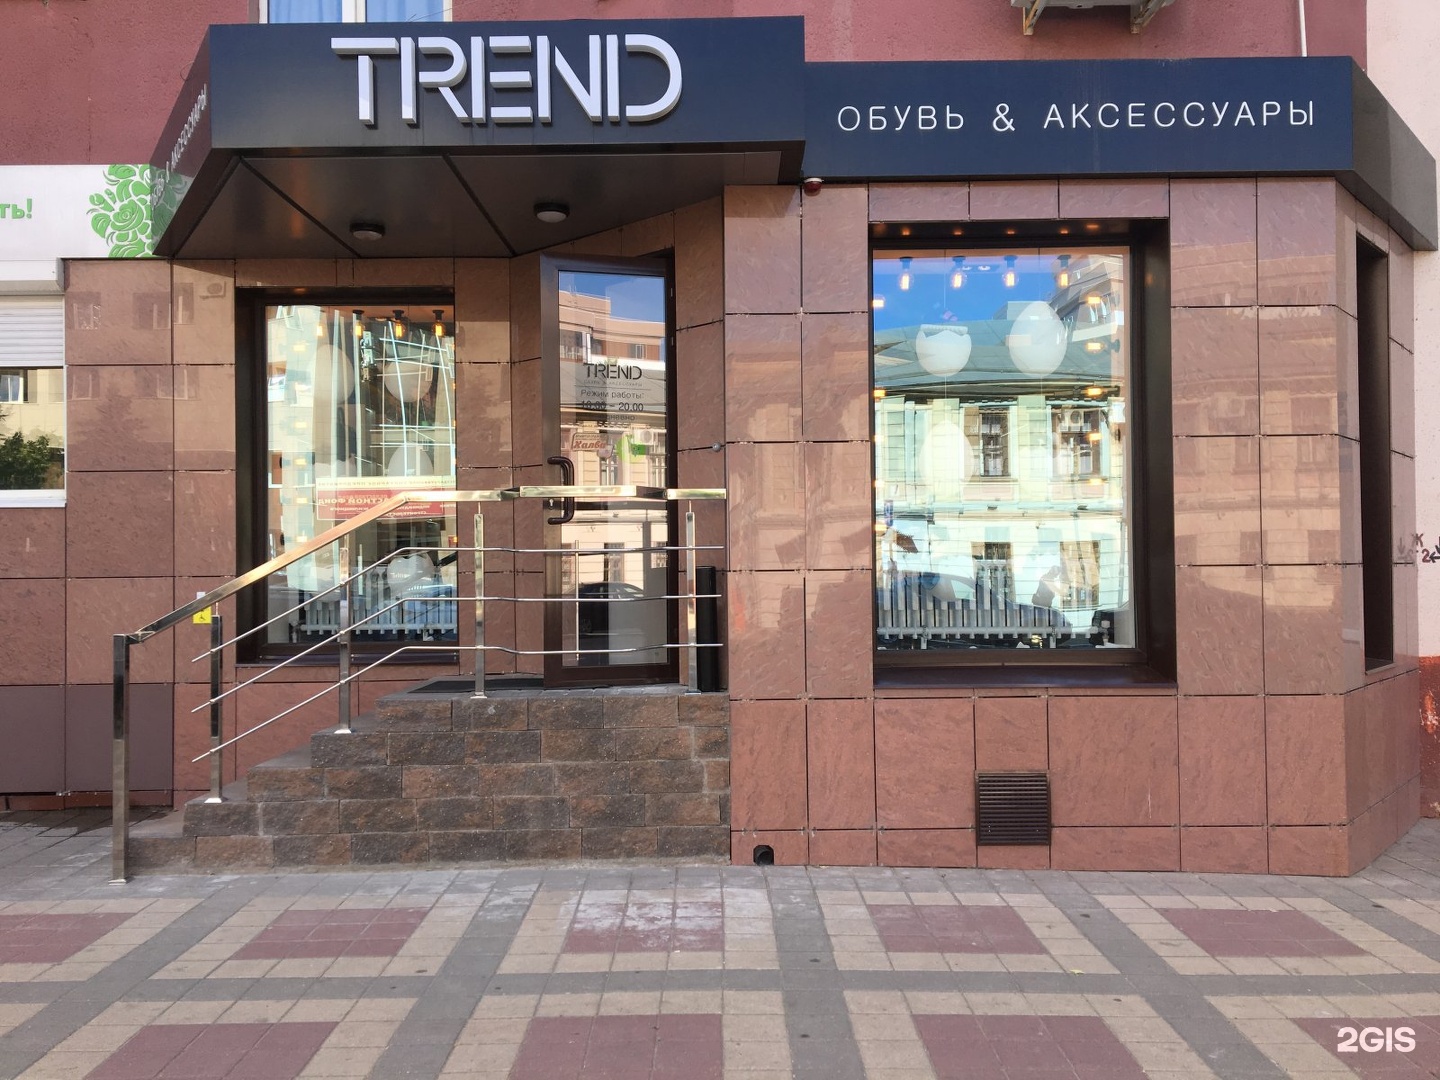 Trend boutique